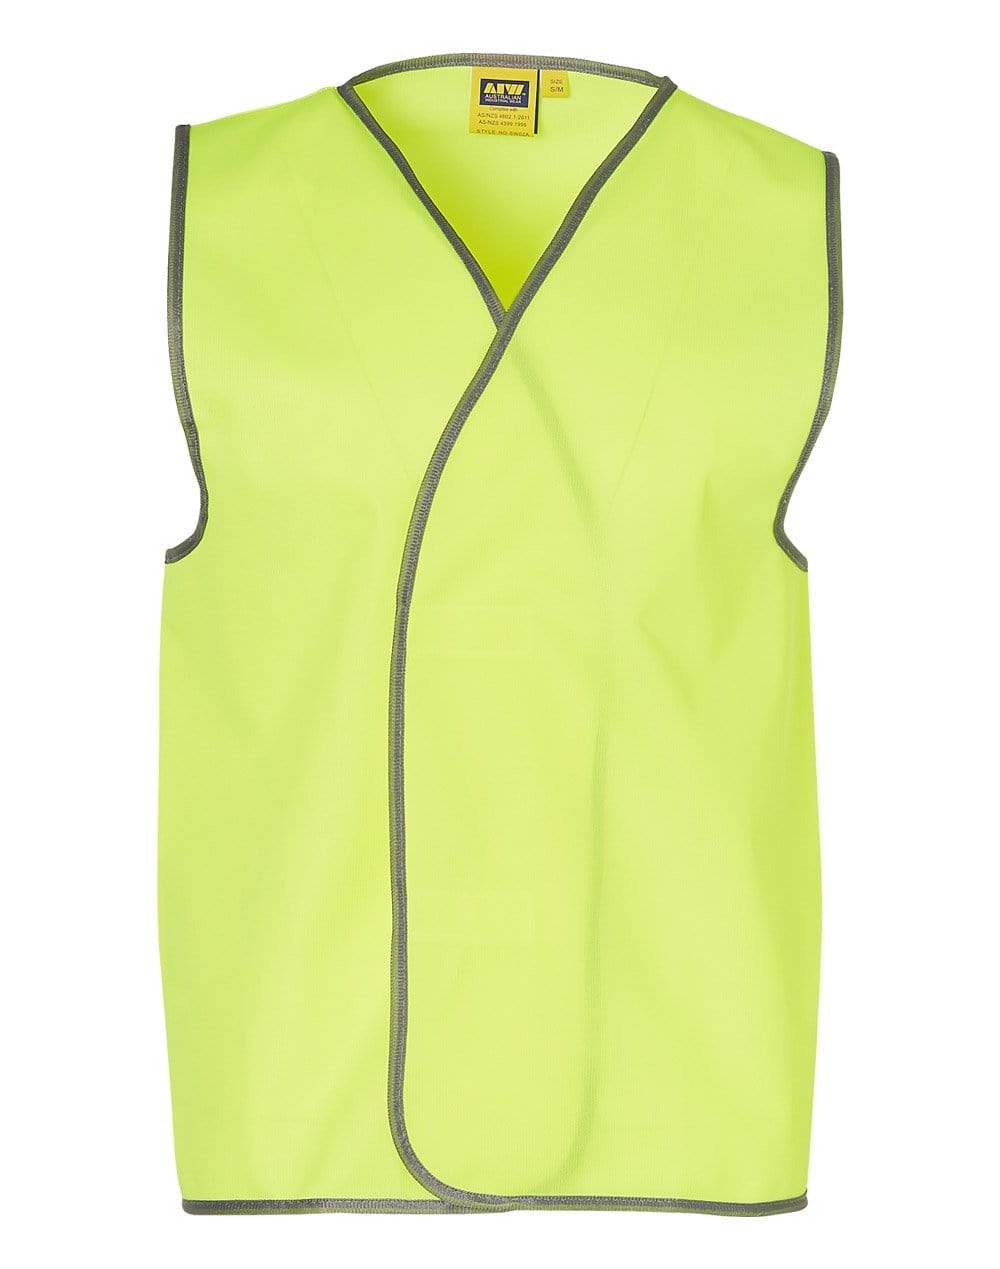 Hi-vis Safety Vest Adult SW02A Work Wear Australian Industrial Wear S-M Yellow 